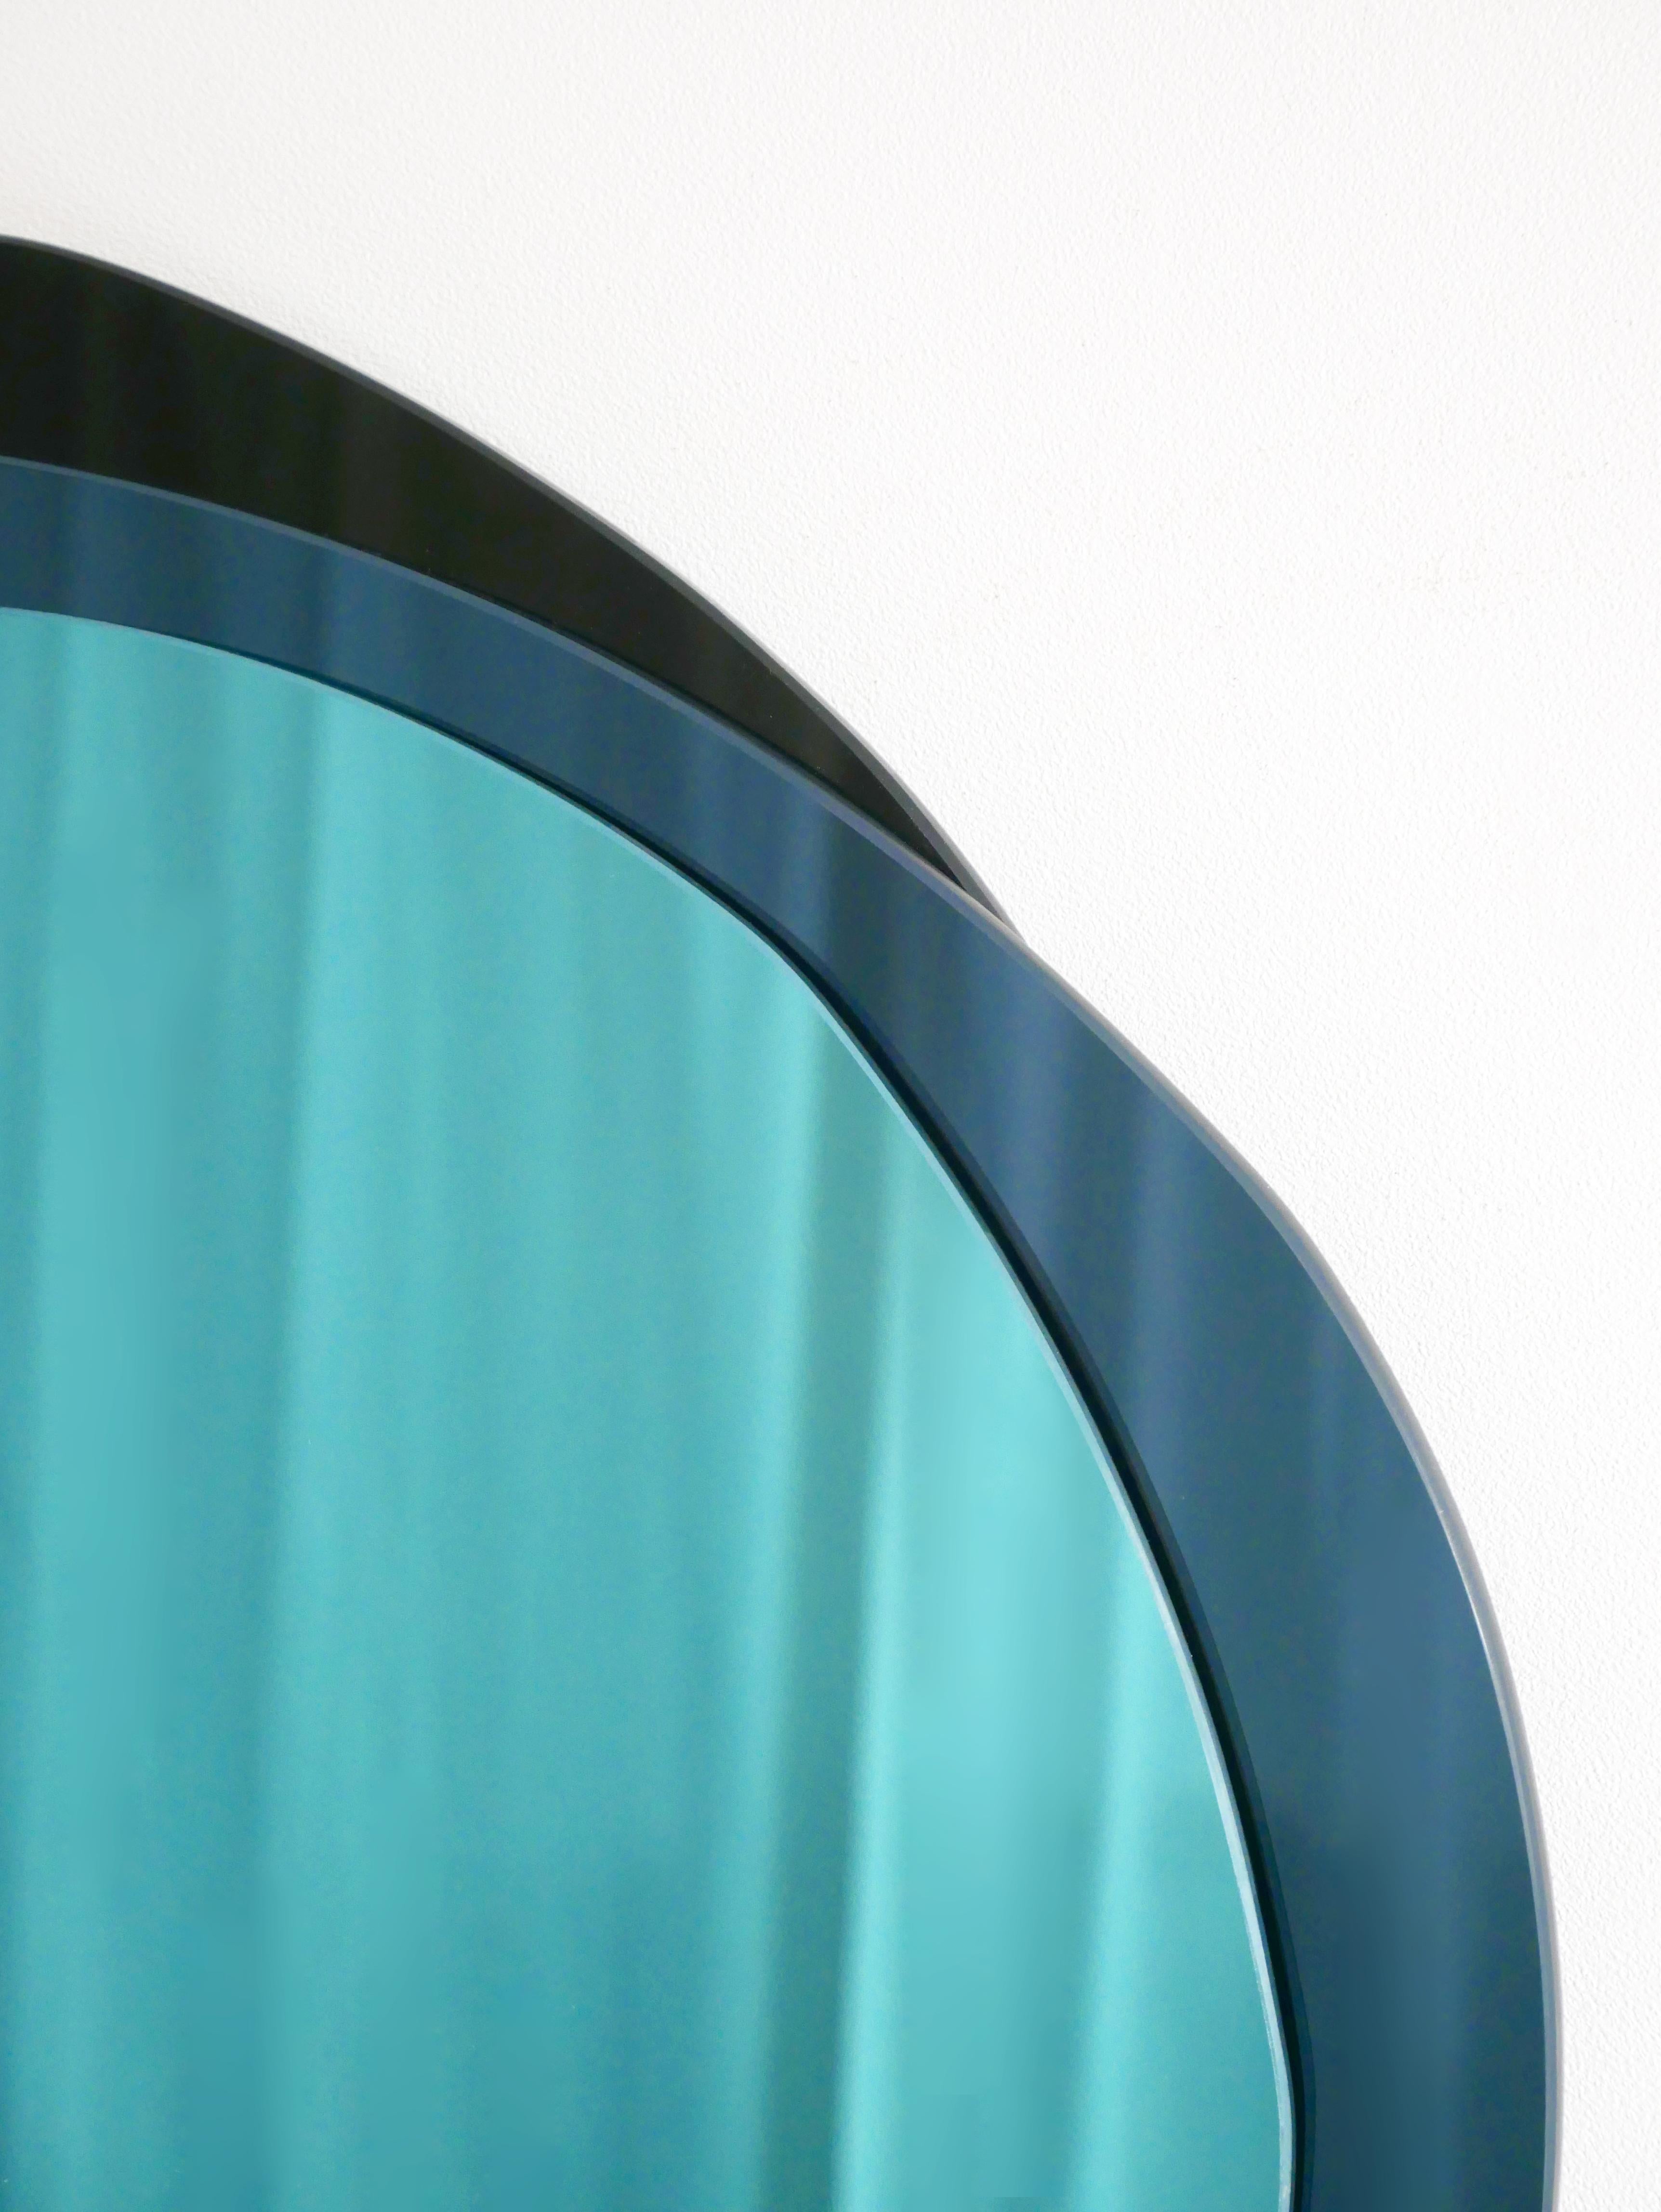 Lunar X-large miroir sculpté à la main, Laurene Guarneri
Édition limitée.
Fait à la main.
MATERIAL : Miroir bleu ciel, miroir bleu foncé, miroir foncé
Dimensions : 100 x 100 cm

Laurène Guarneri est une designer basée à Paris.
Diplômée en